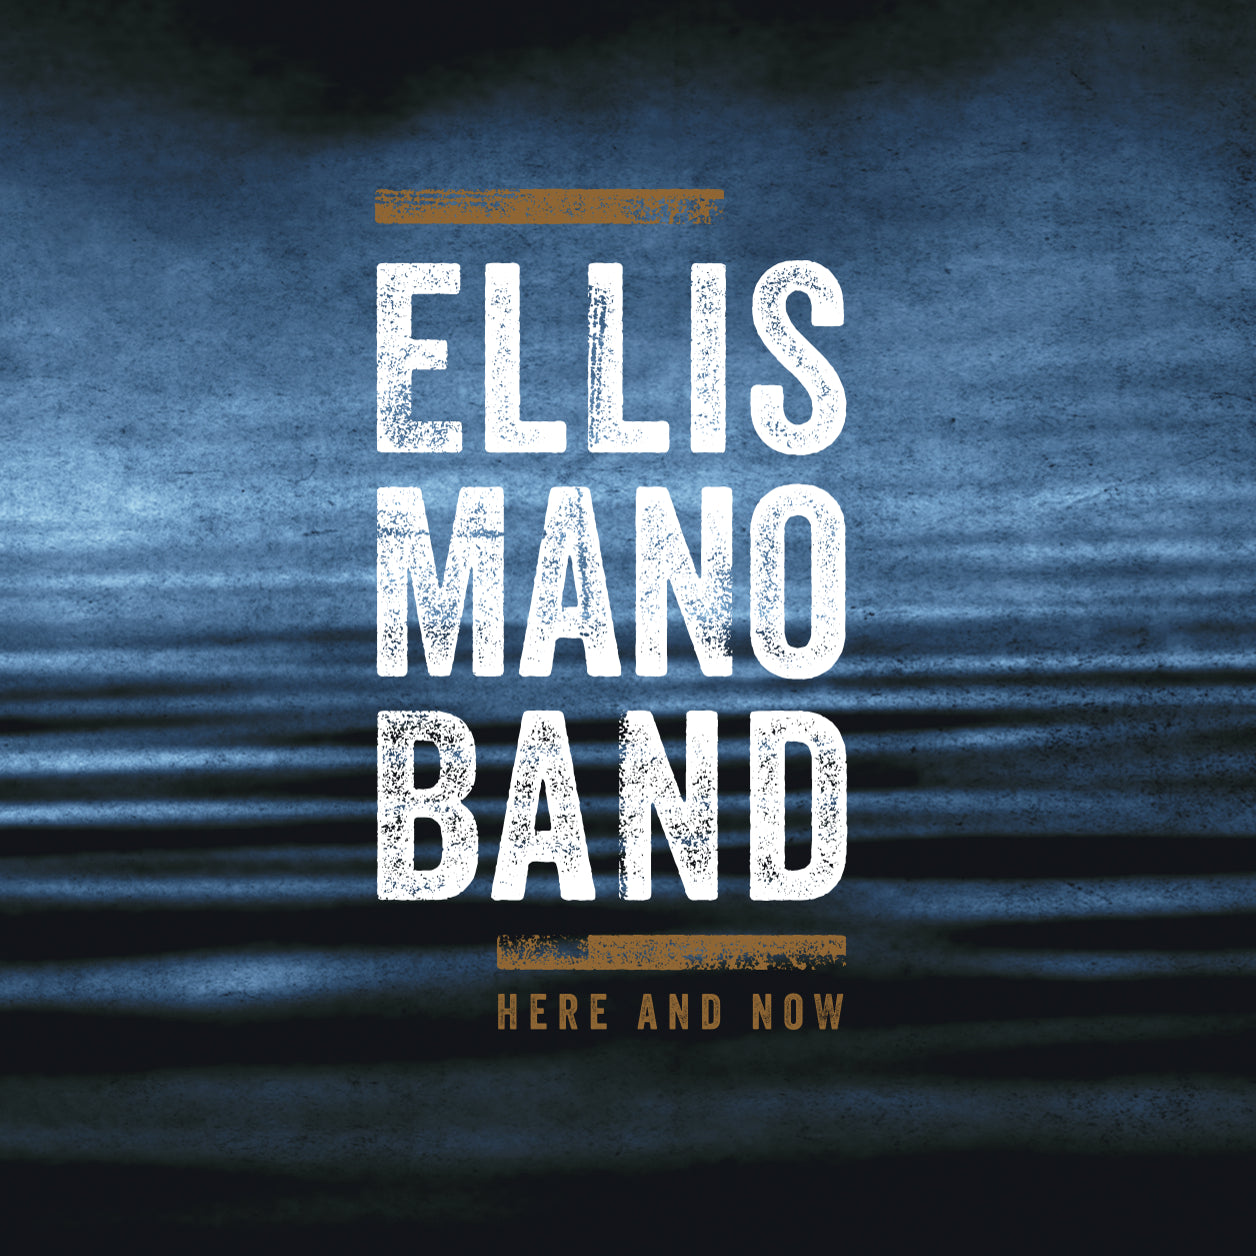 Ellis Mano Band - Ambedo (CD)